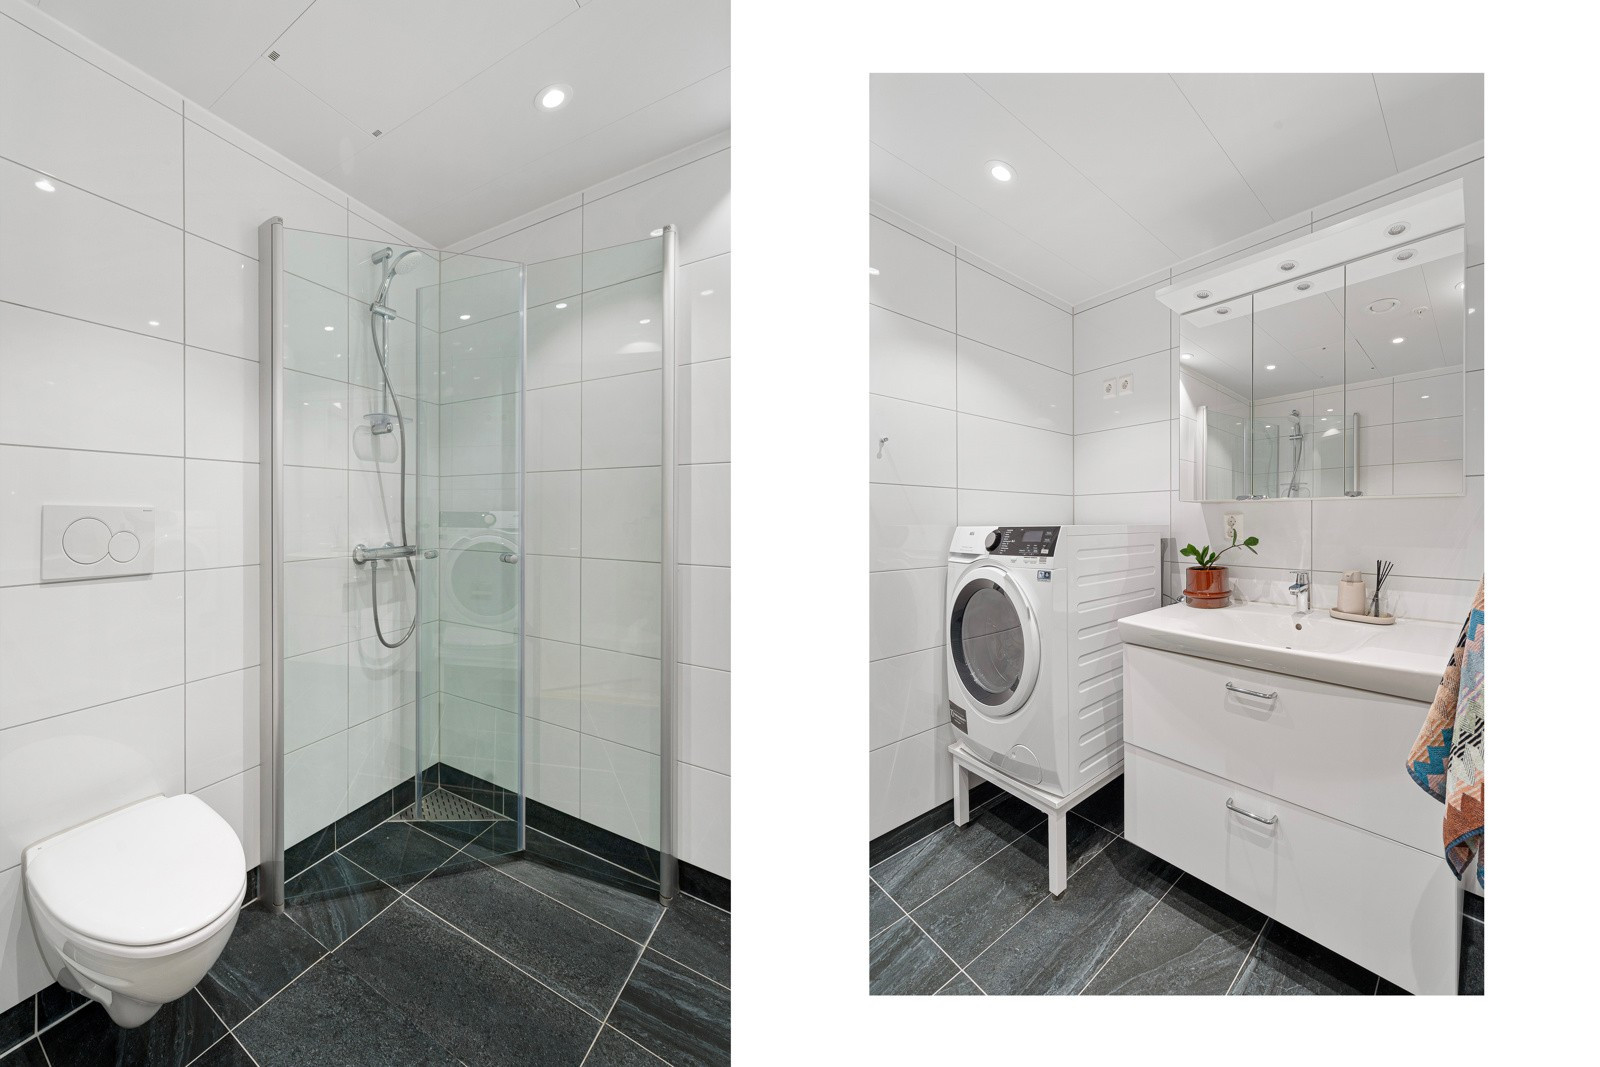 Badet er romslig med plass til vaskemaskin/tørketrommel, stort dusjhjørne og vegghengt toalett.